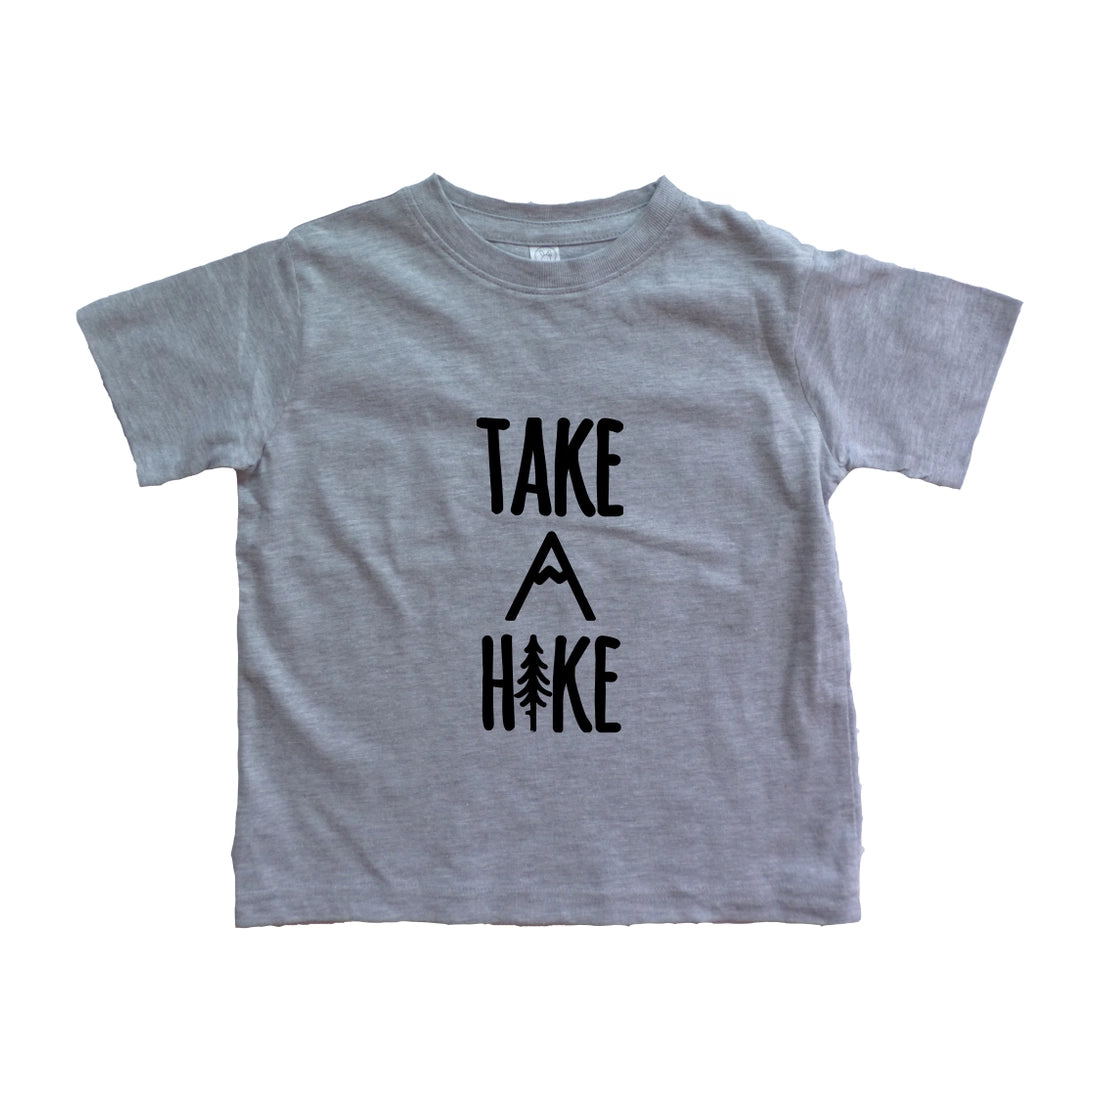 NWT "Take A Hike" Graphic Tee